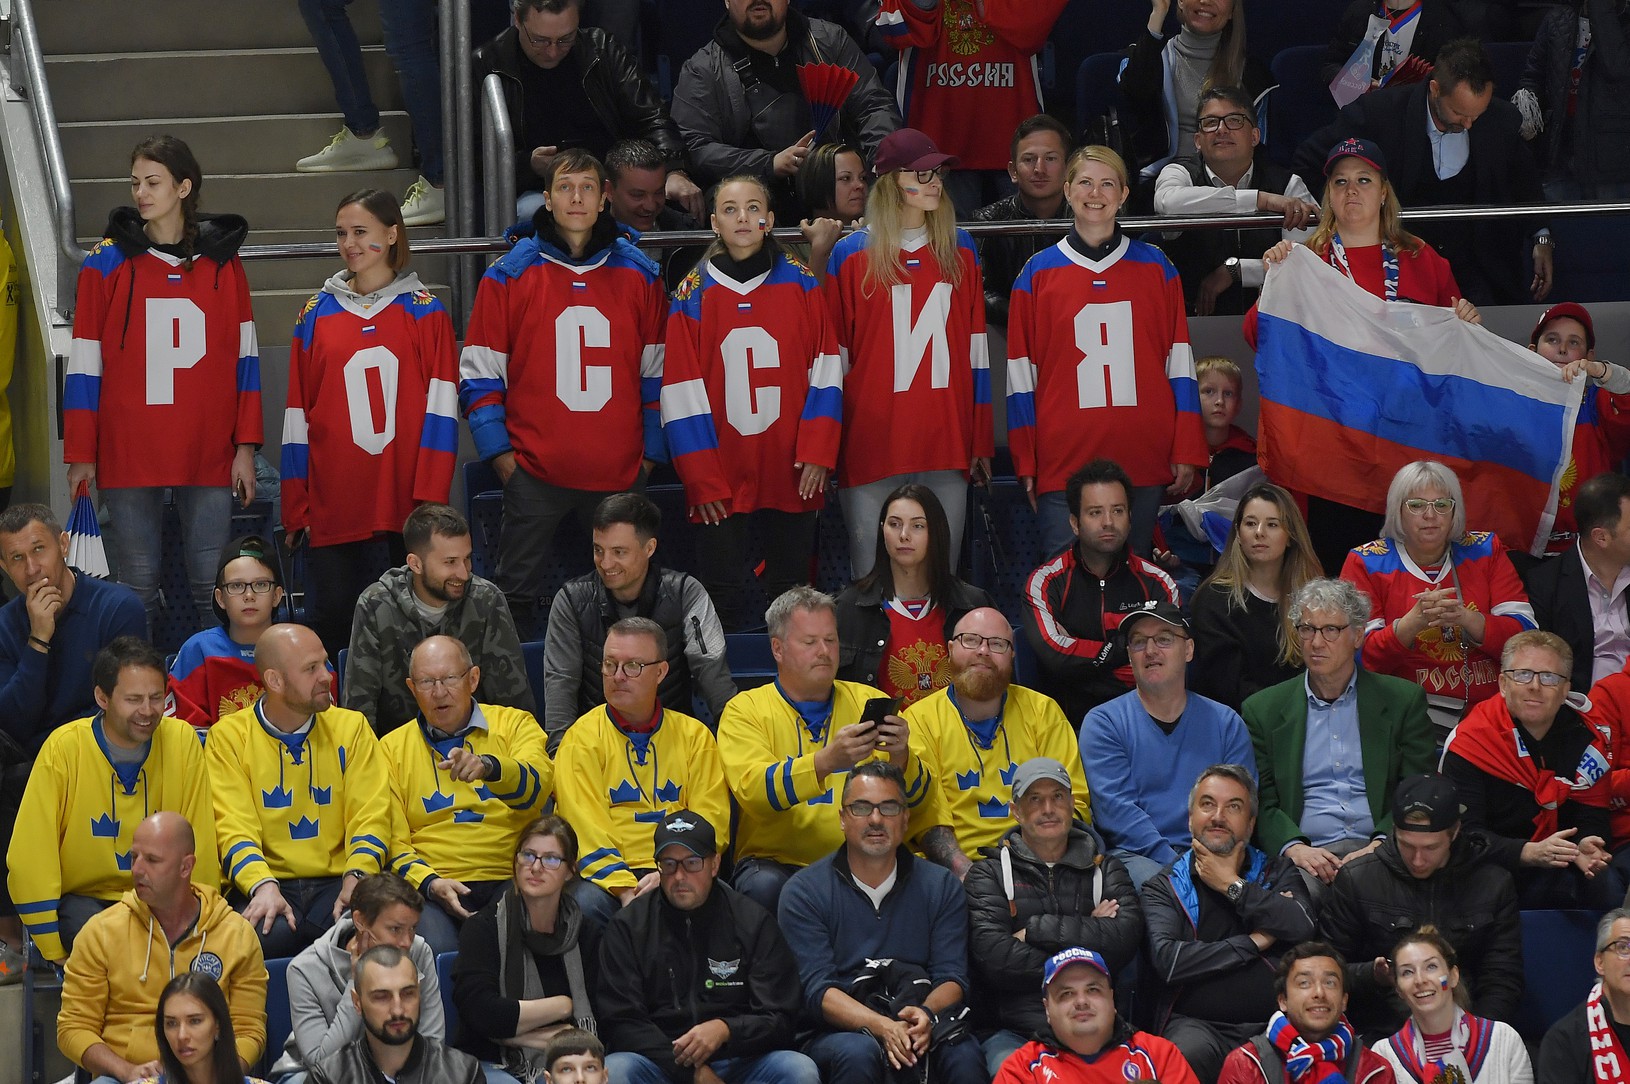 Ruskí fanúšikovia